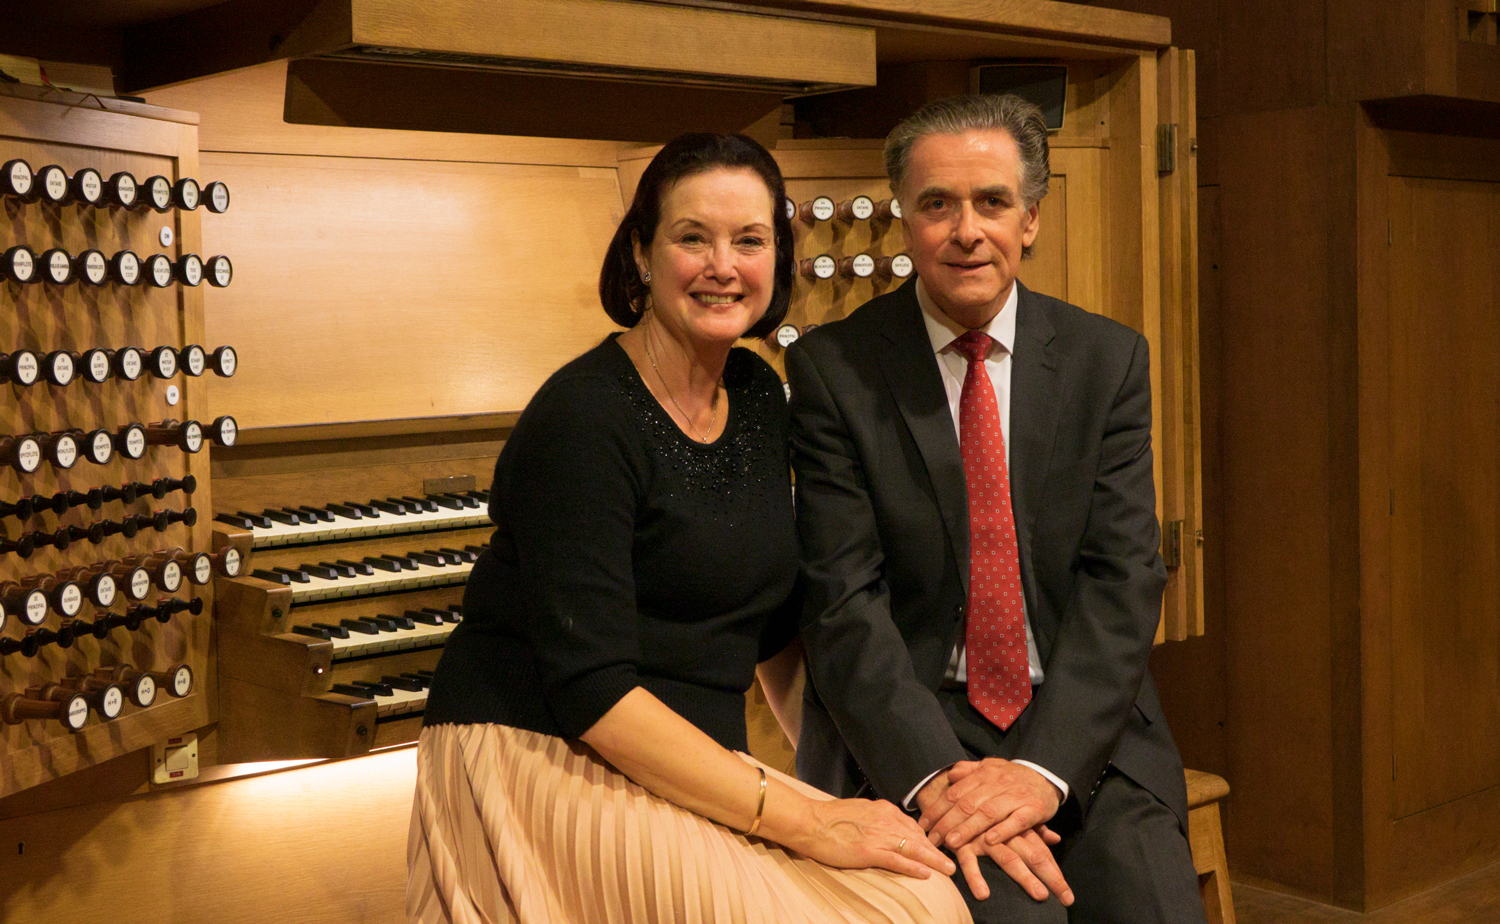 Ben van Oosten und seine Frau und Registrantin Margaret Roest